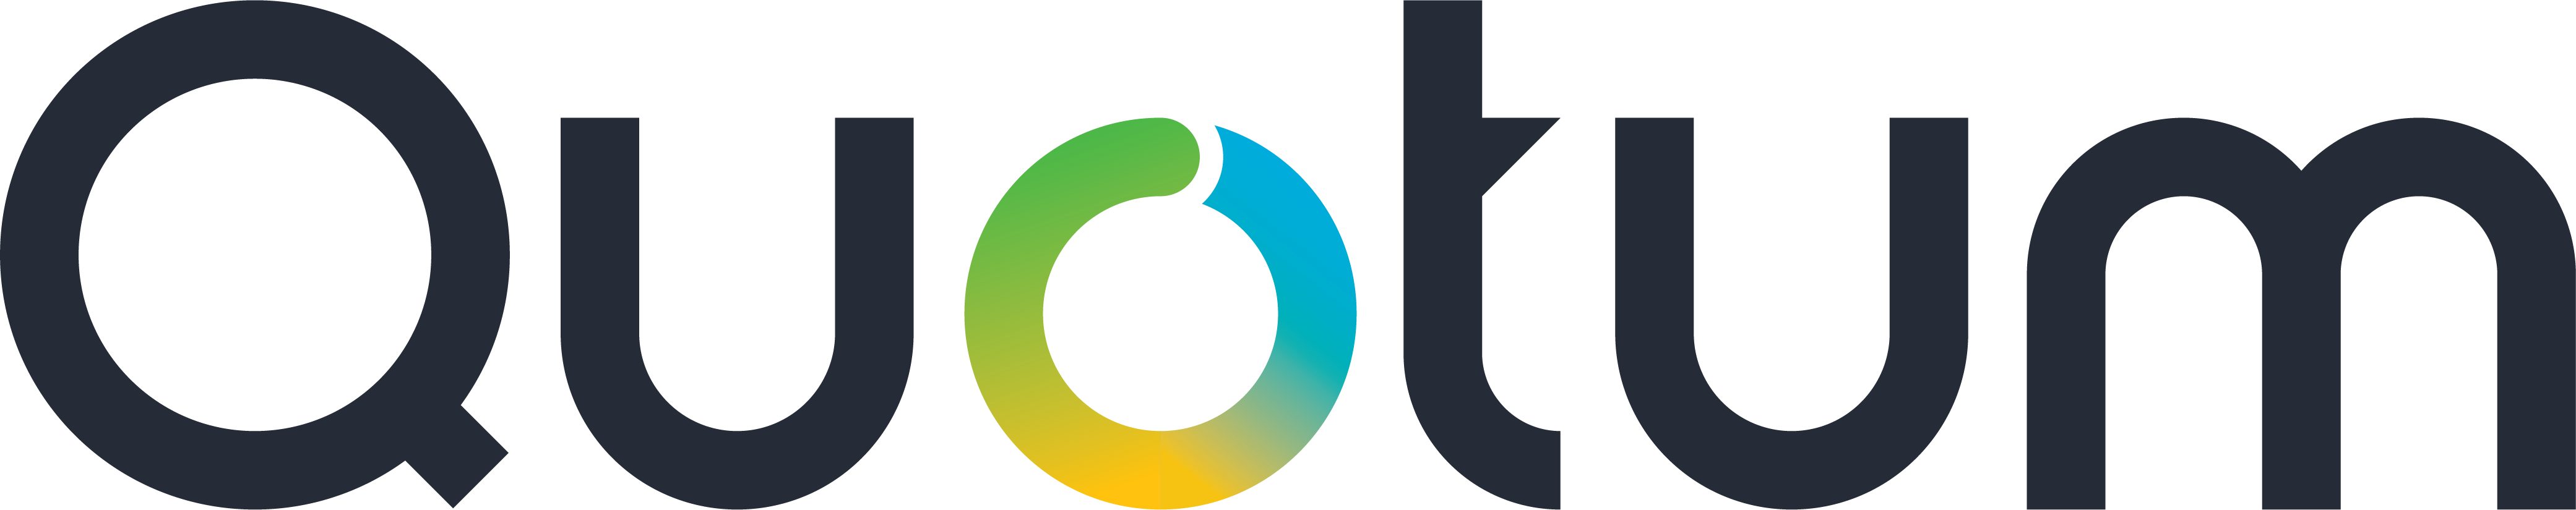 Quontum logo